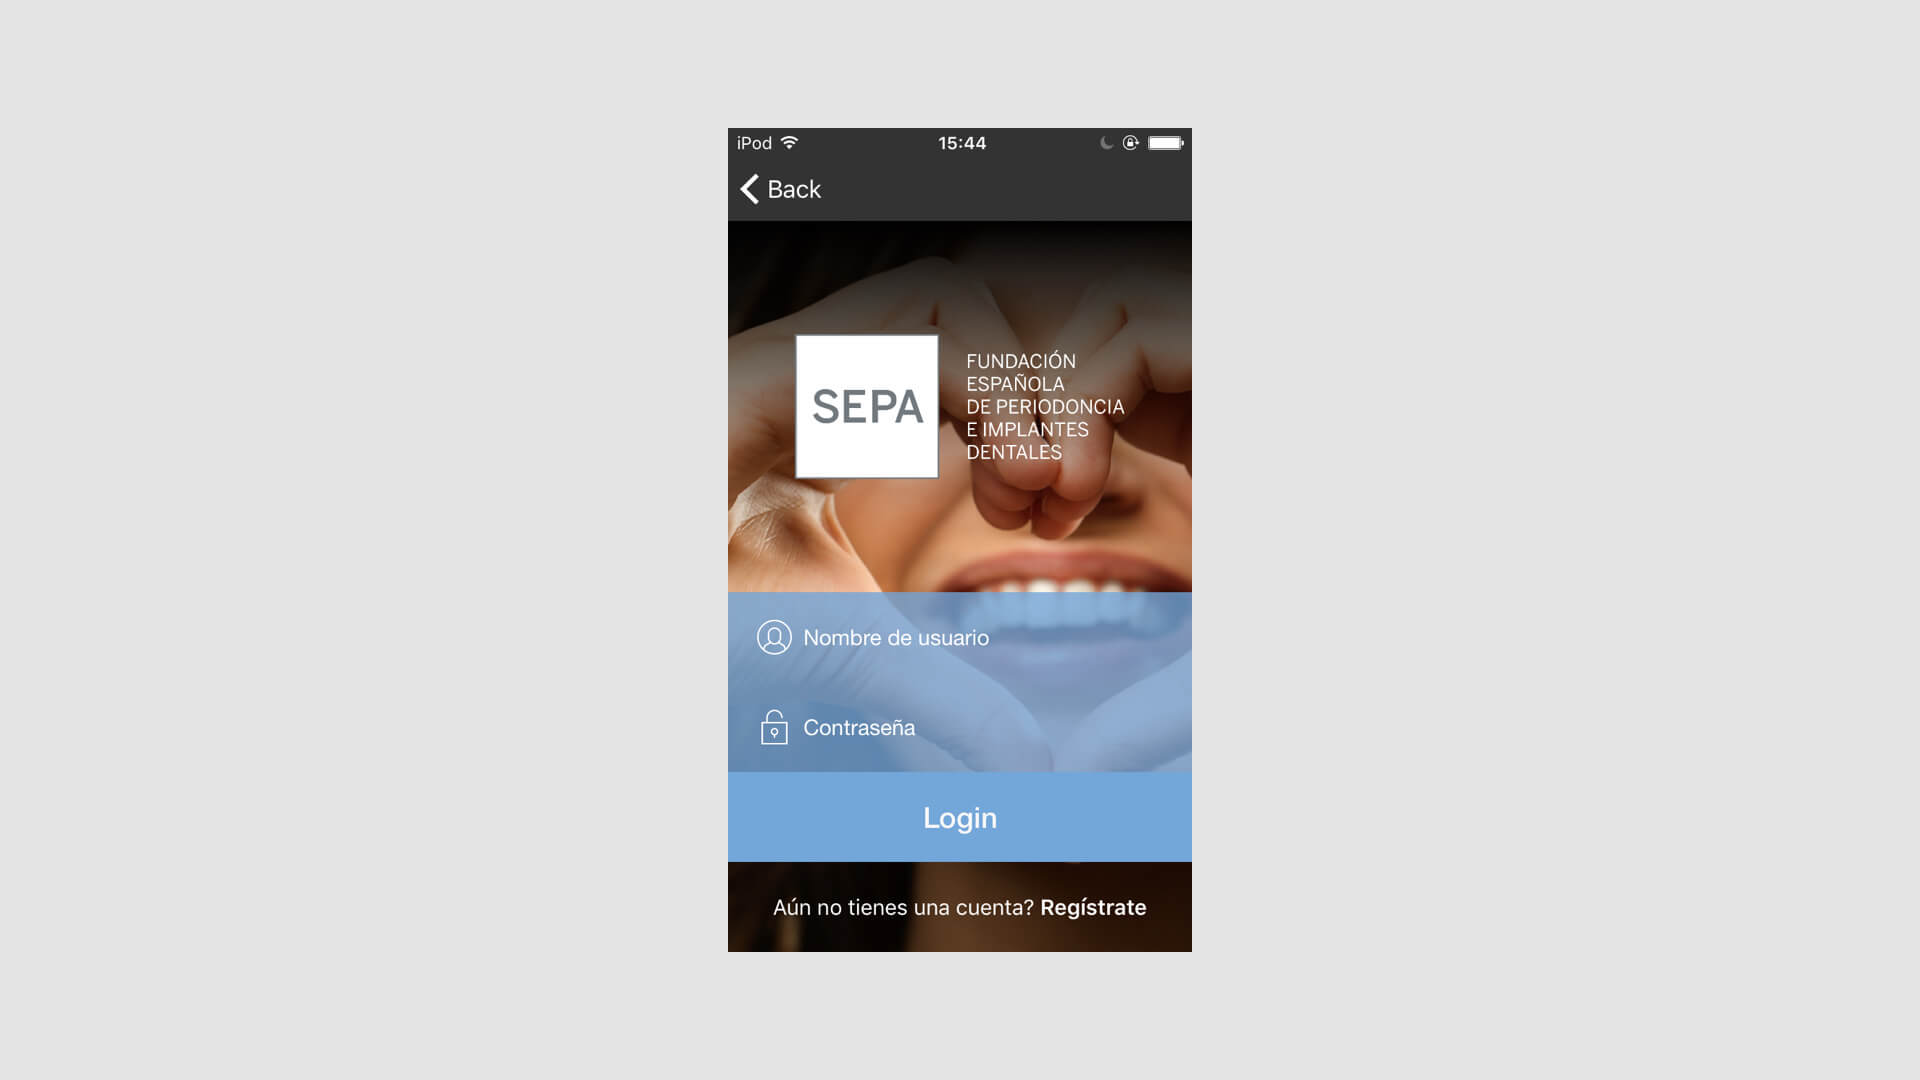 Captura de pantalla de smartphone de la app nativa para el cliente de SEPA